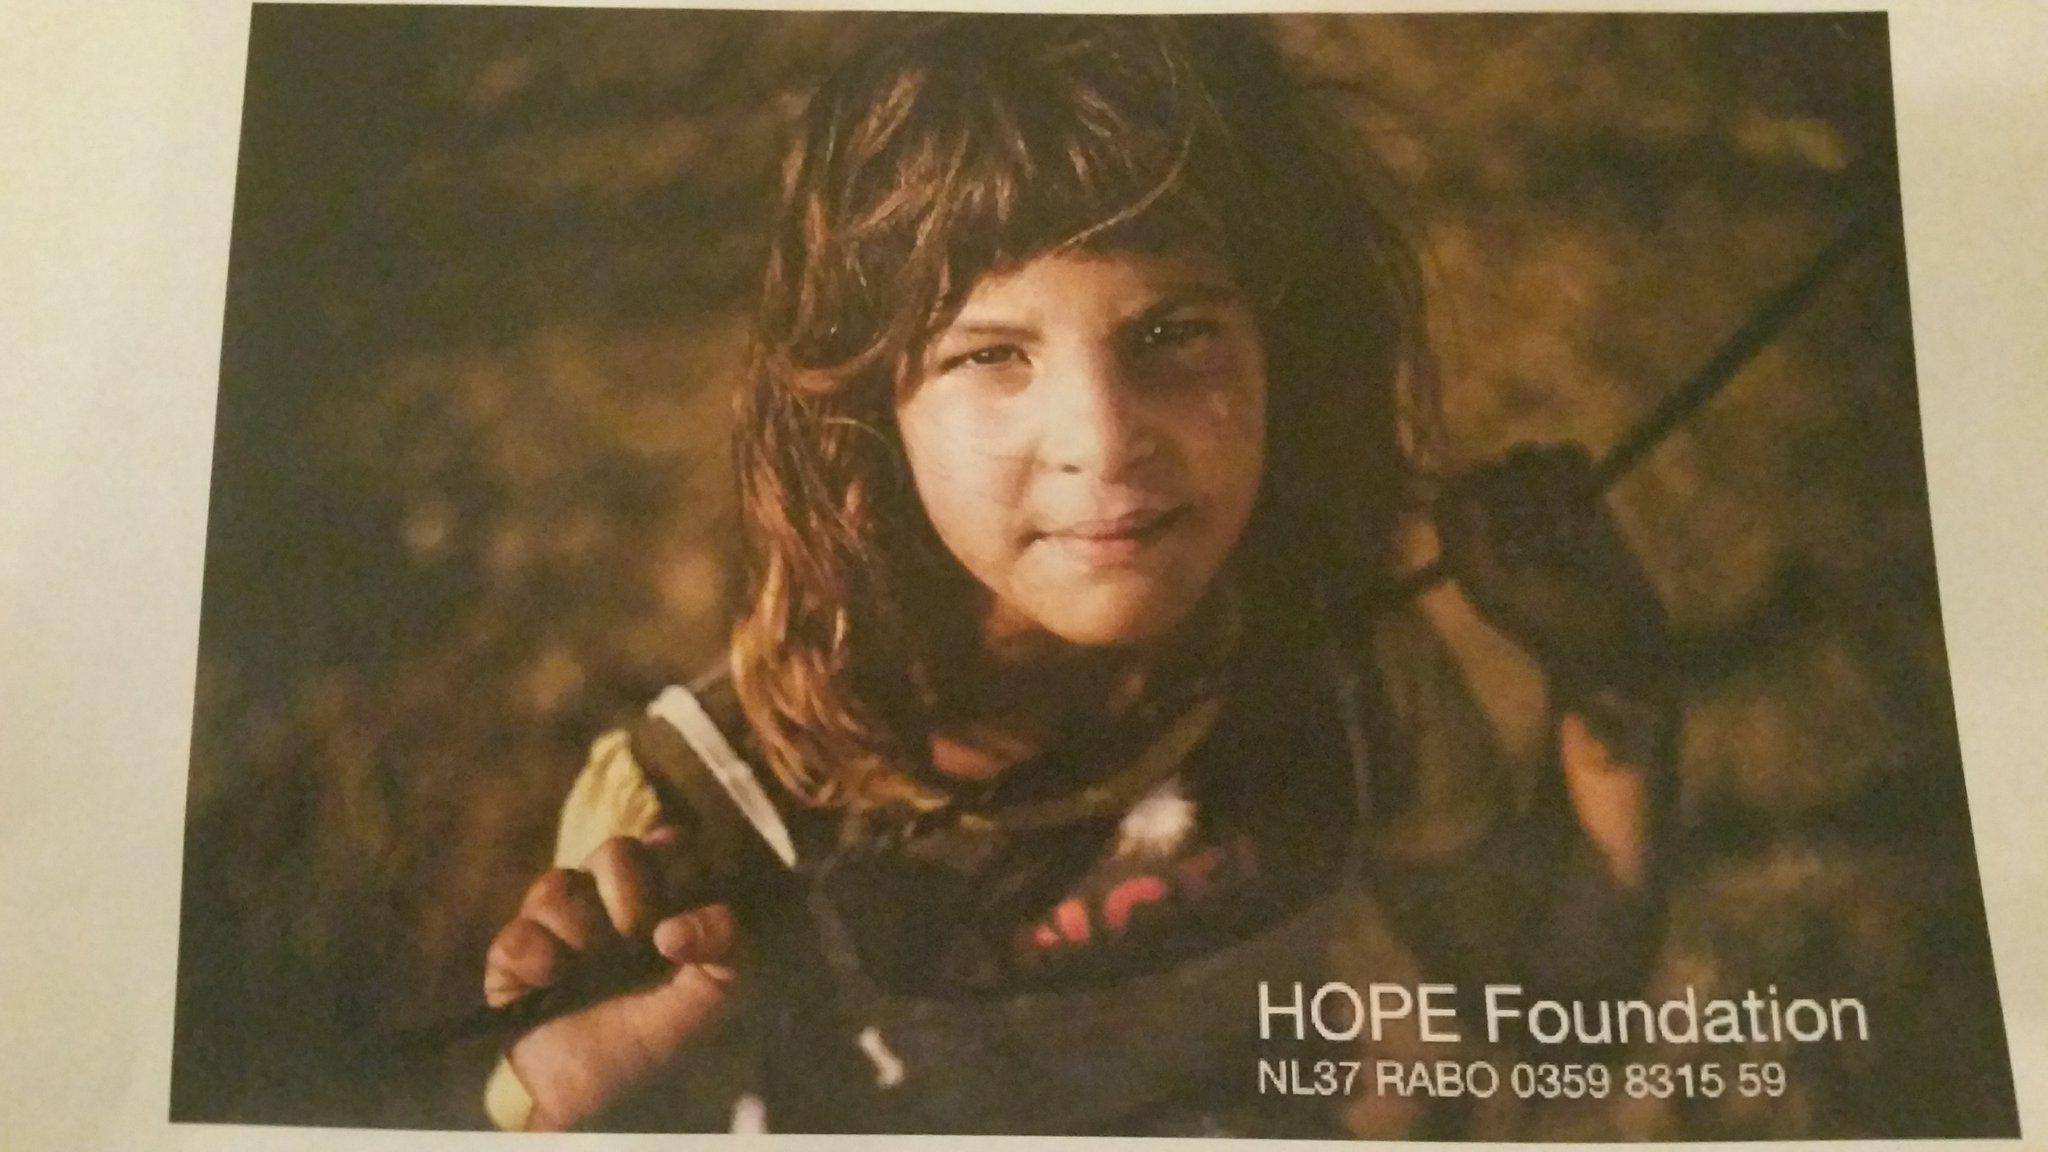 Presentatie van de HOPE Foundation bij Noabershop